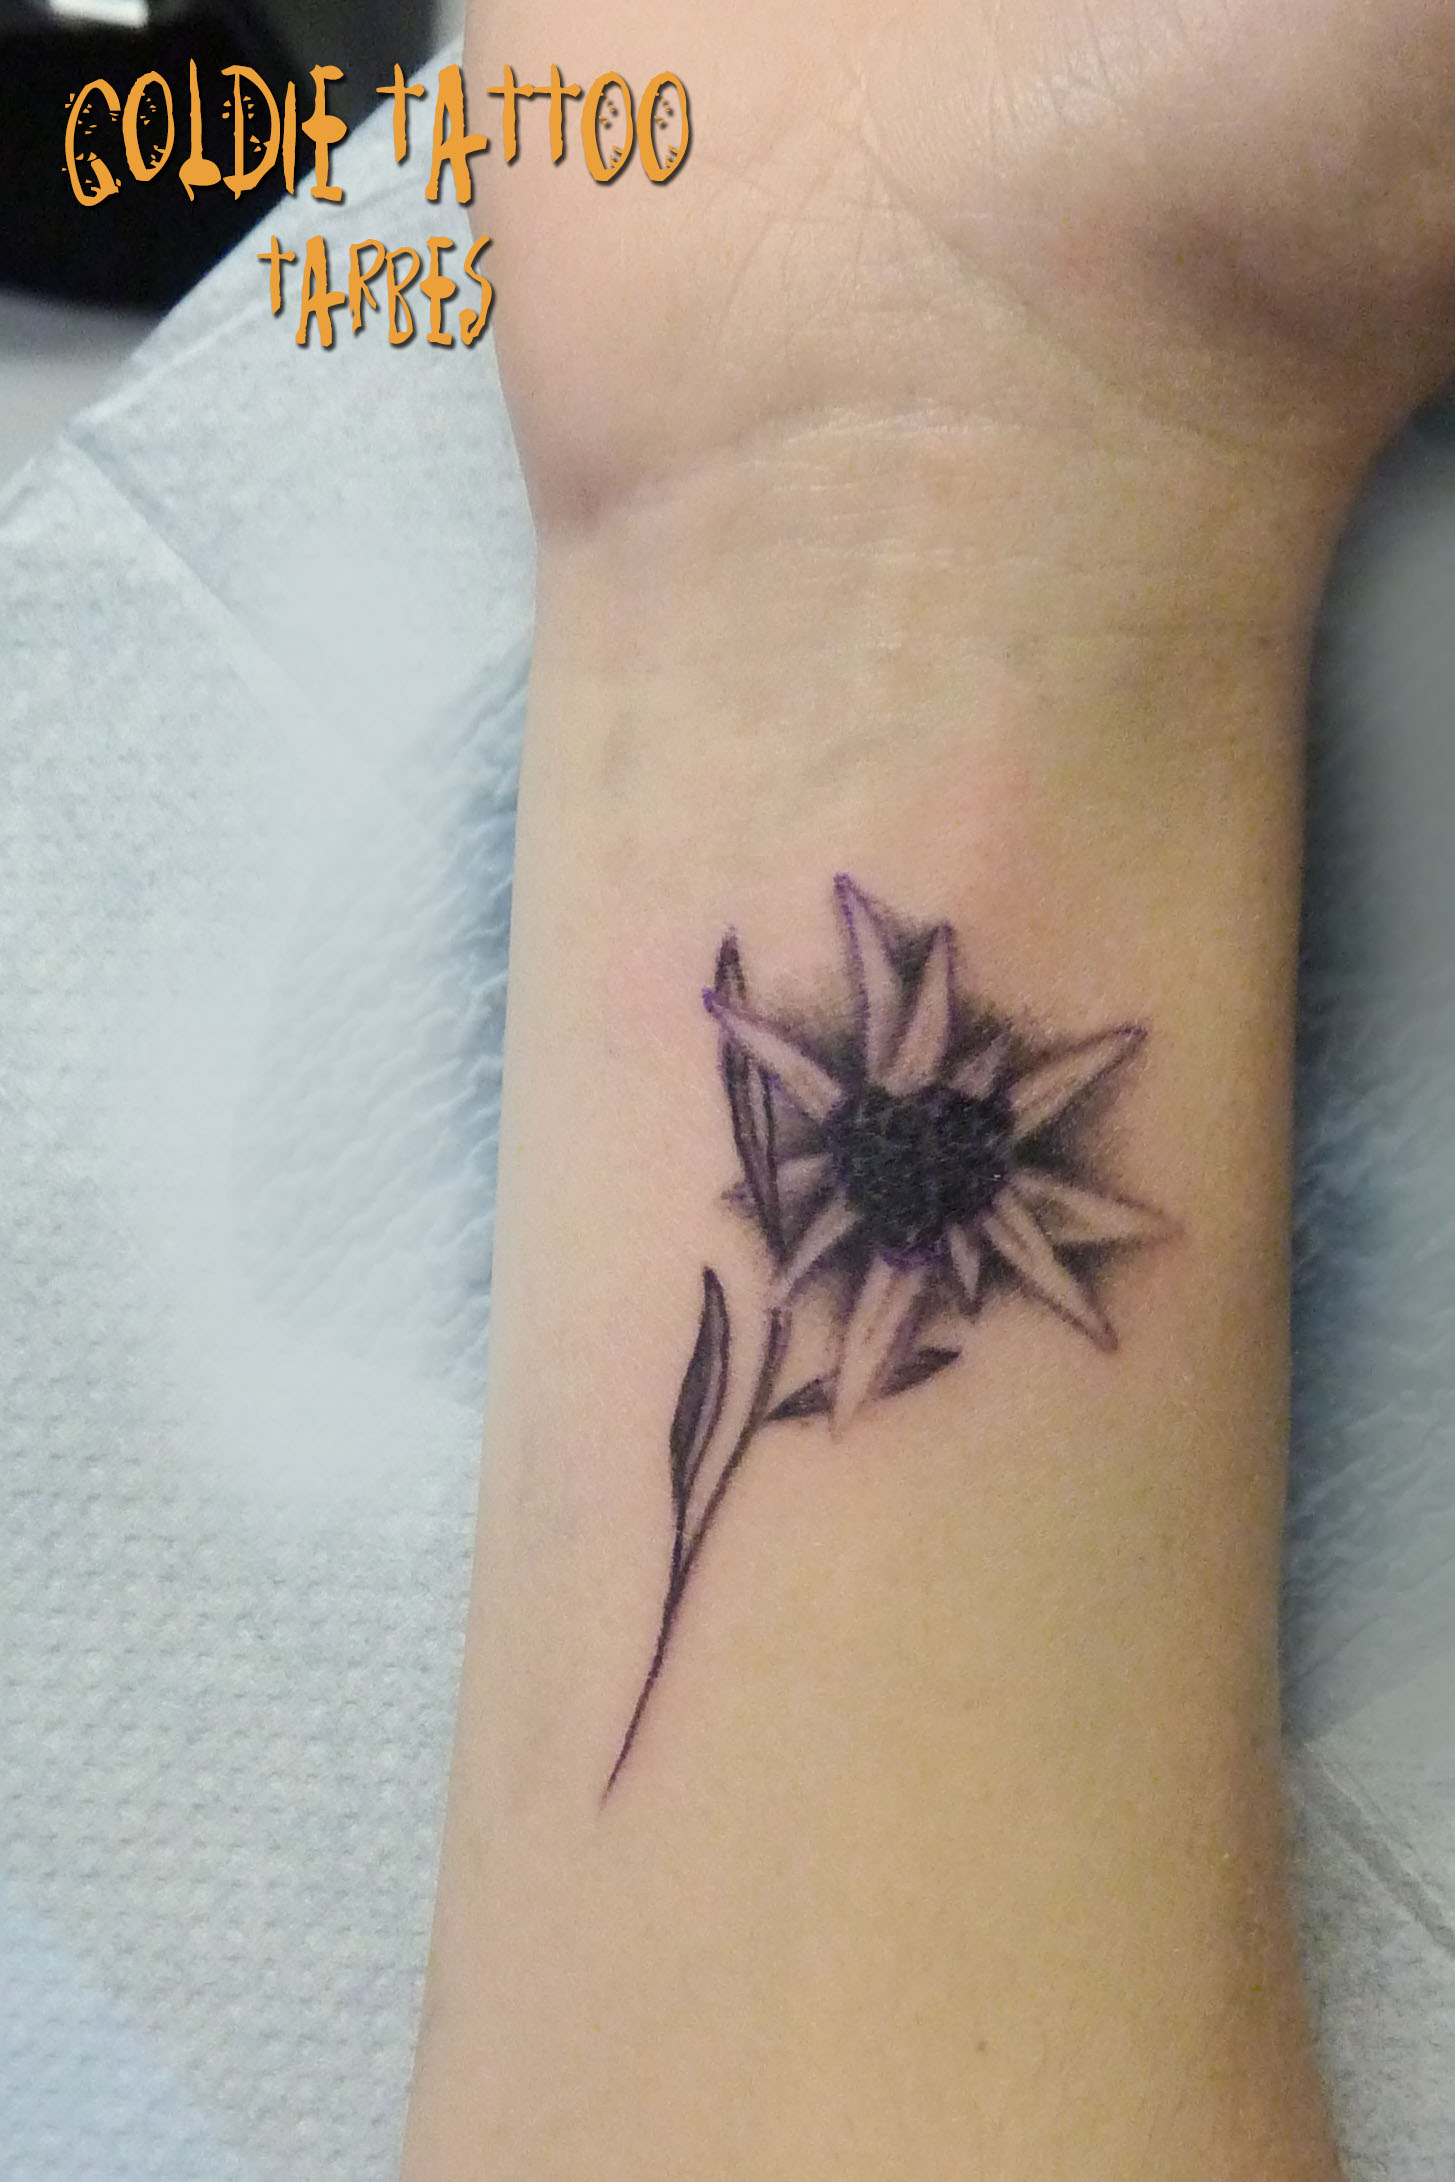 Goldie Tattoo Tarbes.12.2013.edelweiss poignet.jpg